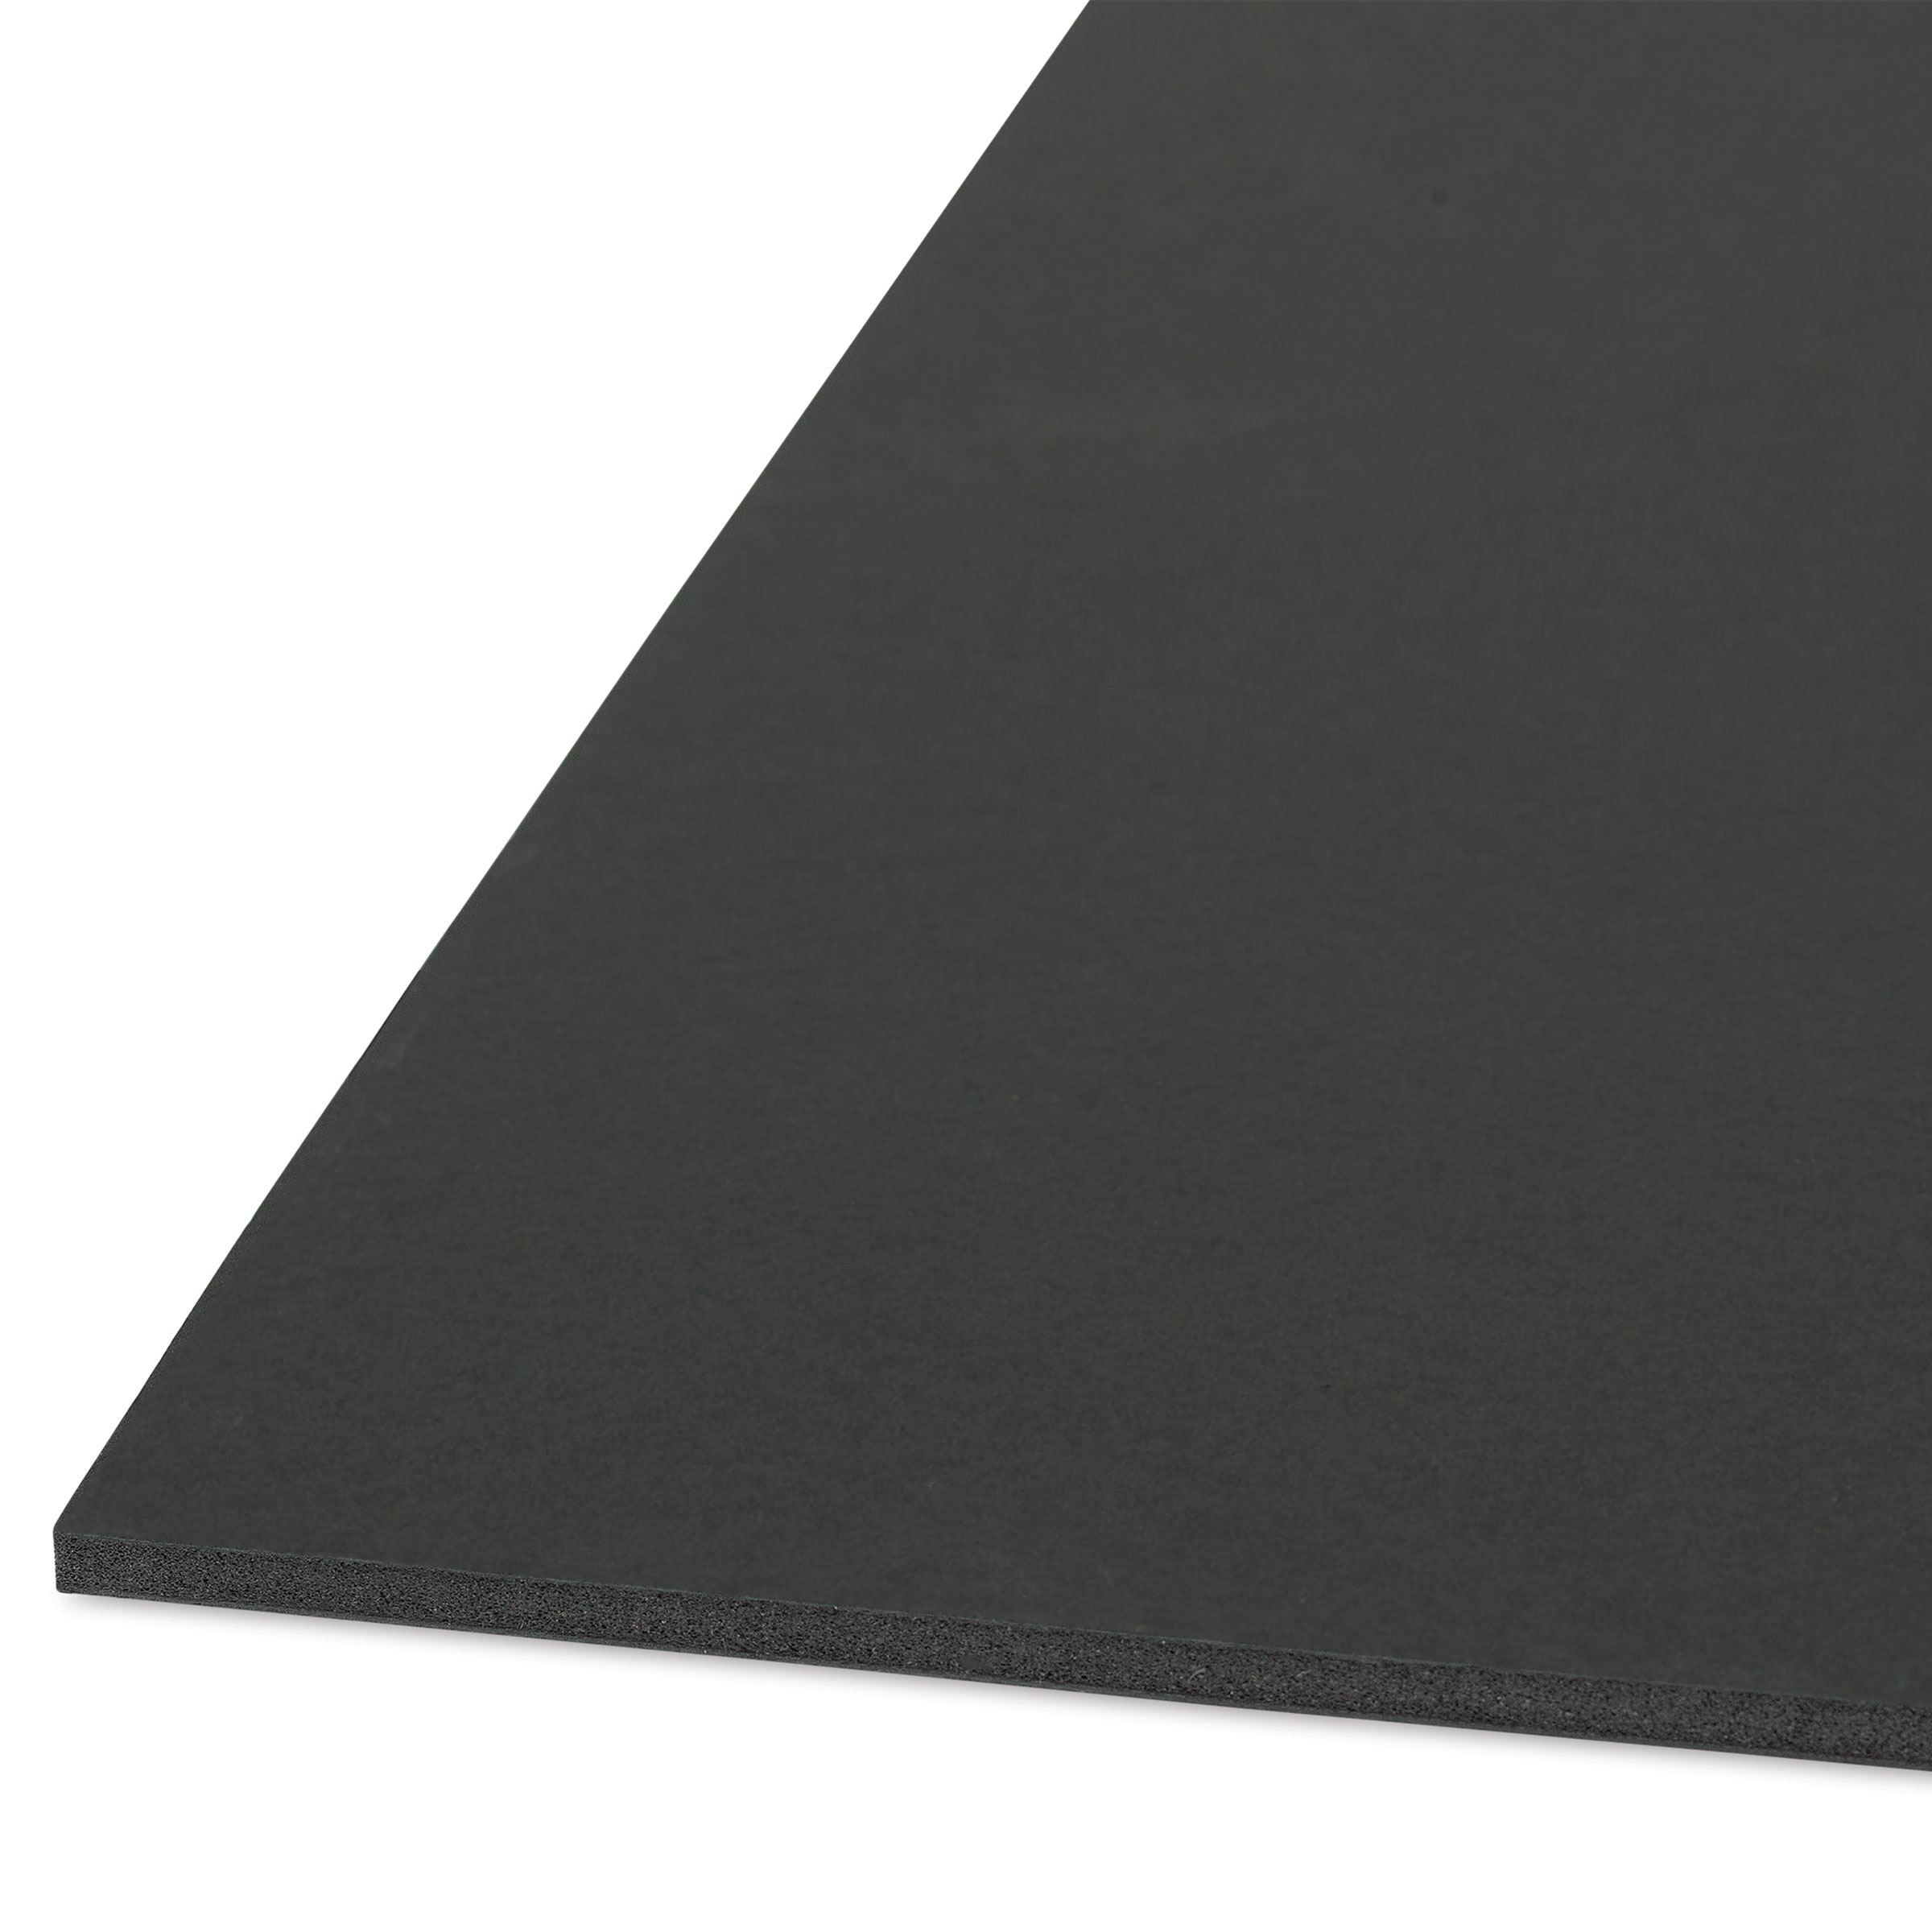 Nielsen & Bainbridge Clay Coated Foam Core Board - 48 x